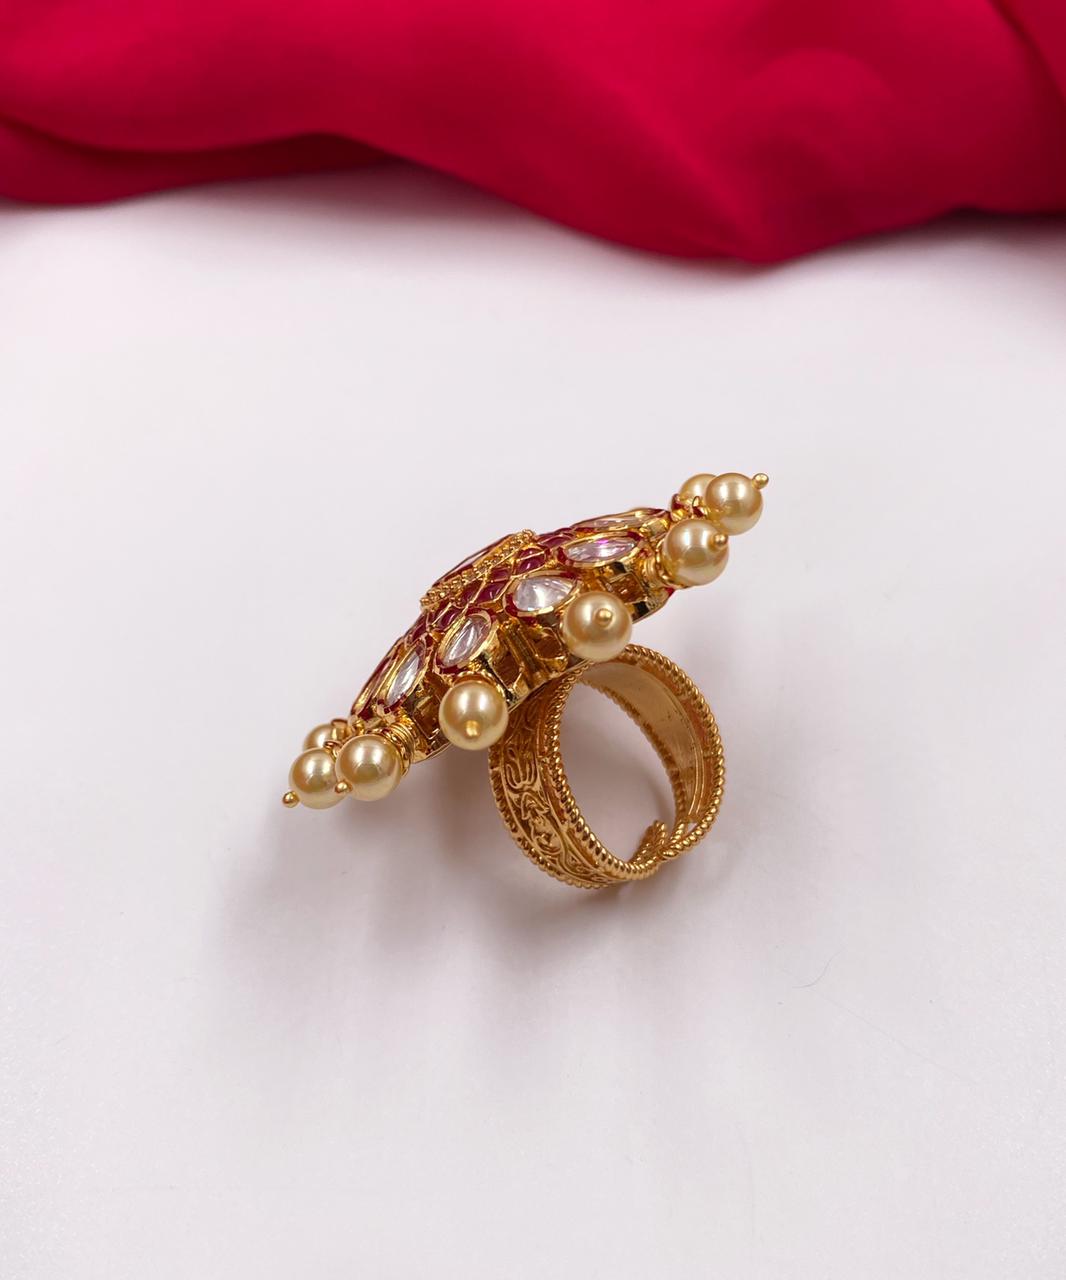 Buy Pink Meenakari Kundan Ring Poli Ring India Gold Kundan Ring for Women  Jadau Kundan Finger Ring India Ring Kundan Polki Ring Antique Kundan Online  in India - Etsy